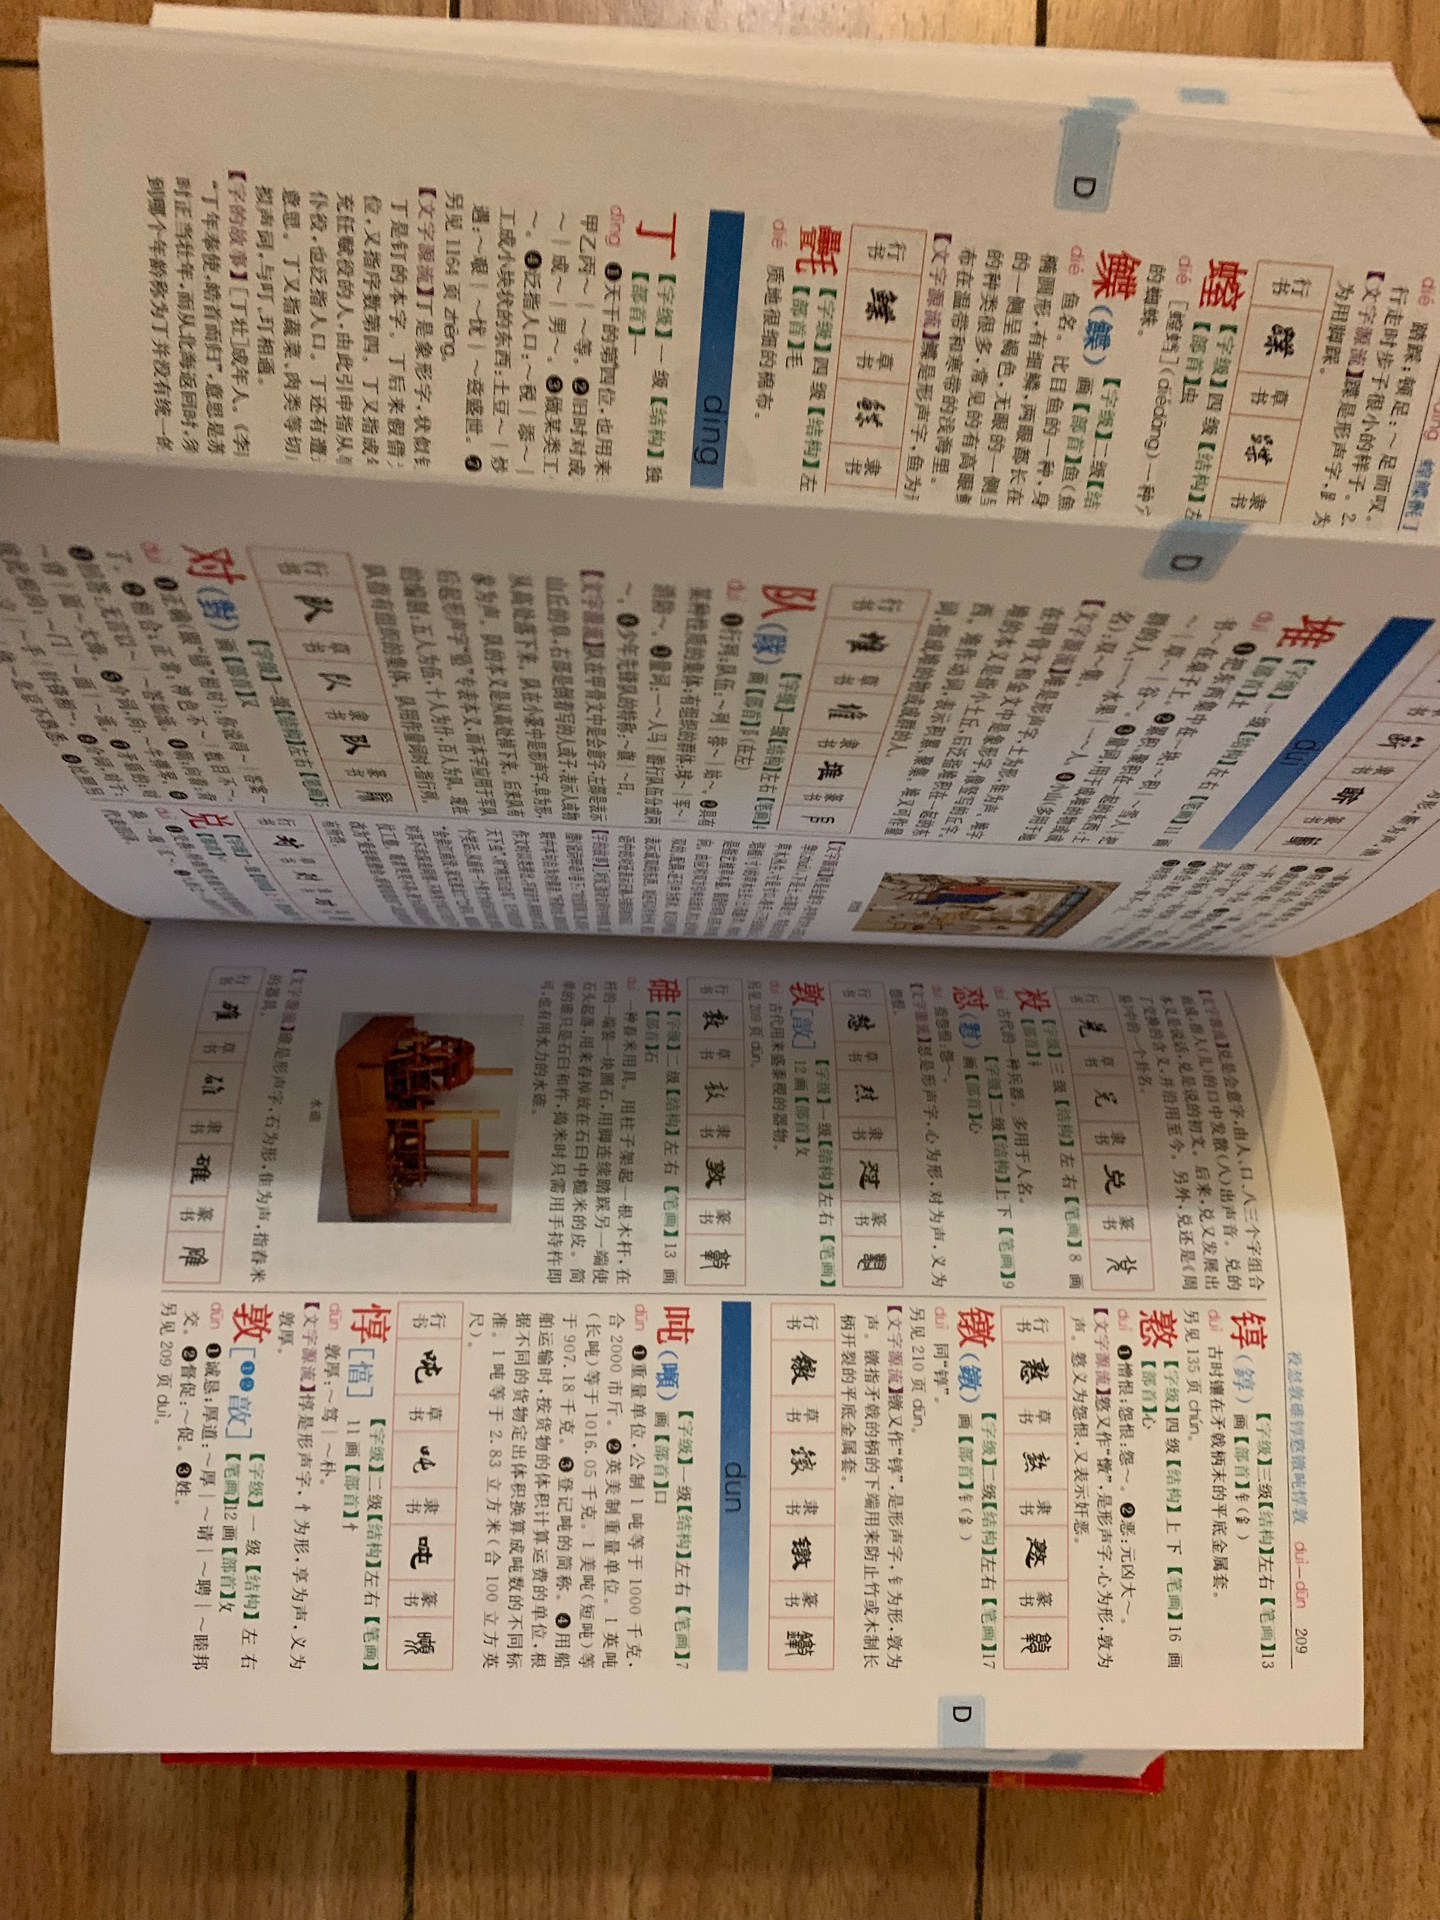 彩页字典啊，很不错，学习工具家庭必备。